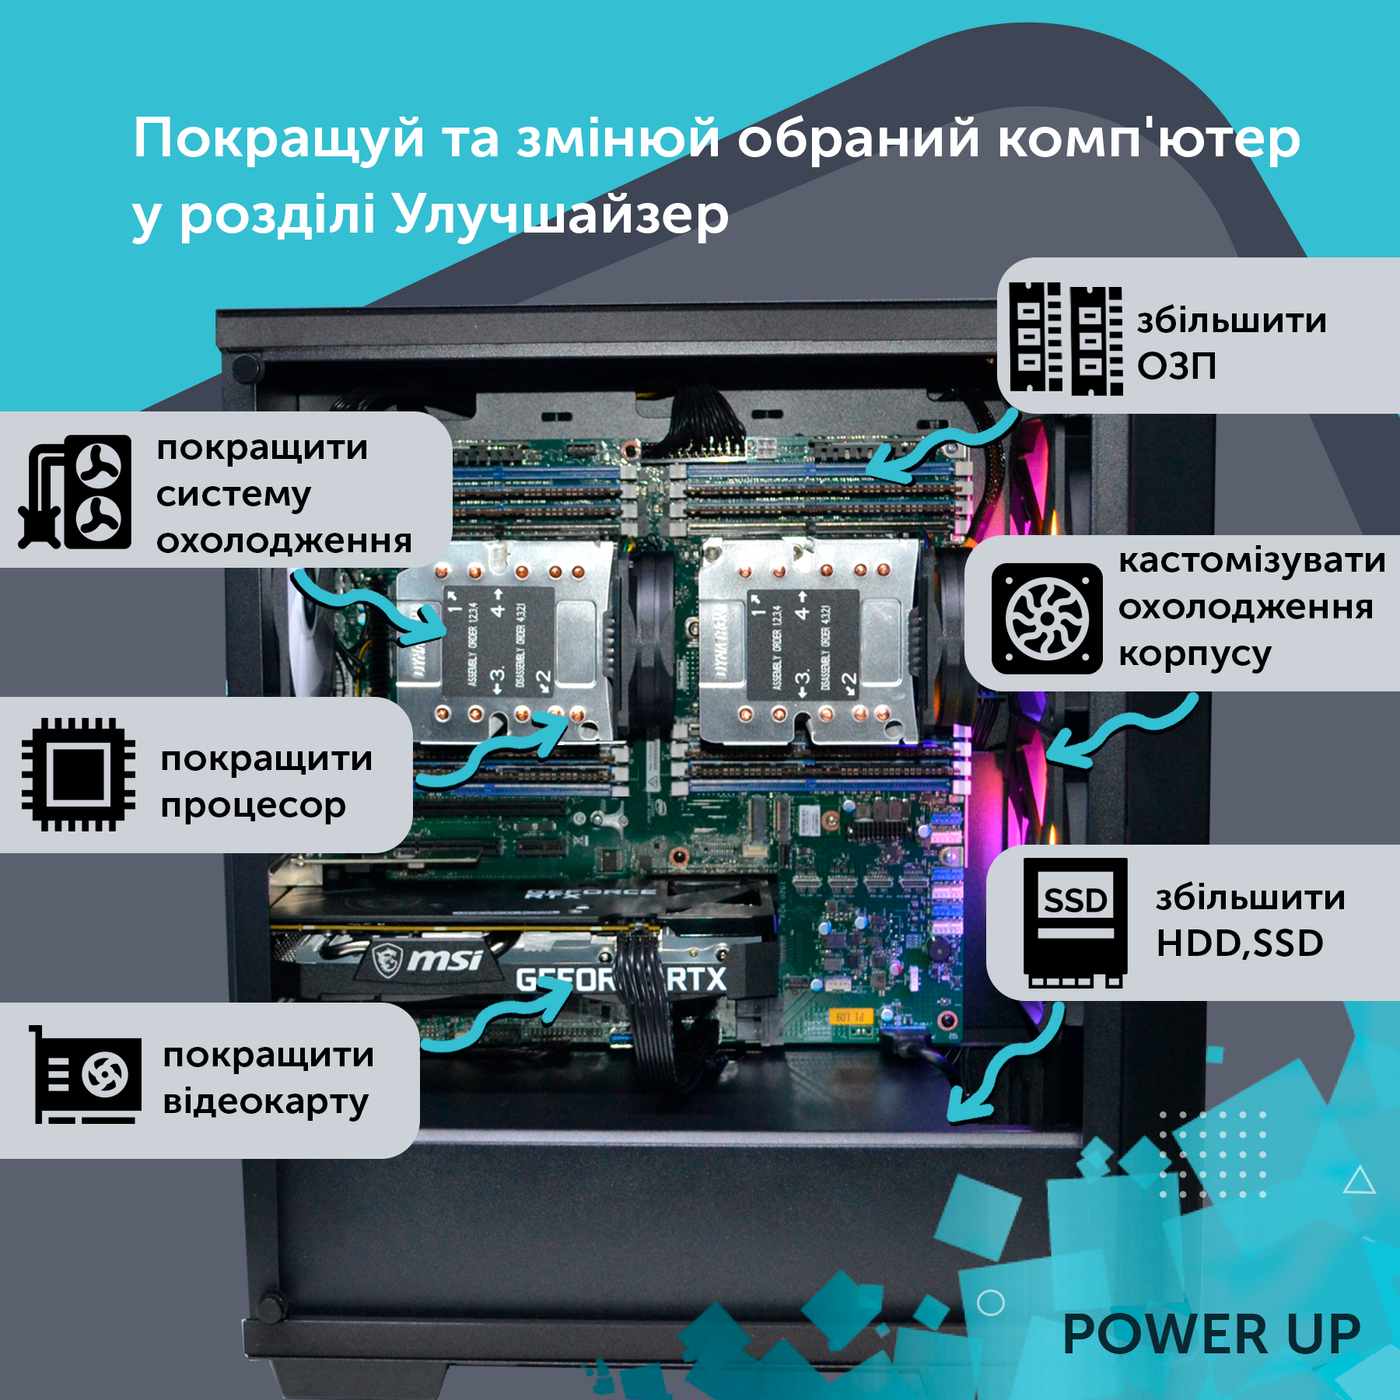 Робоча станція PowerUp Desktop #308 Core i7 14700K/32 GB/SSD 512GB/NVIDIA Quadro M2000 4GB